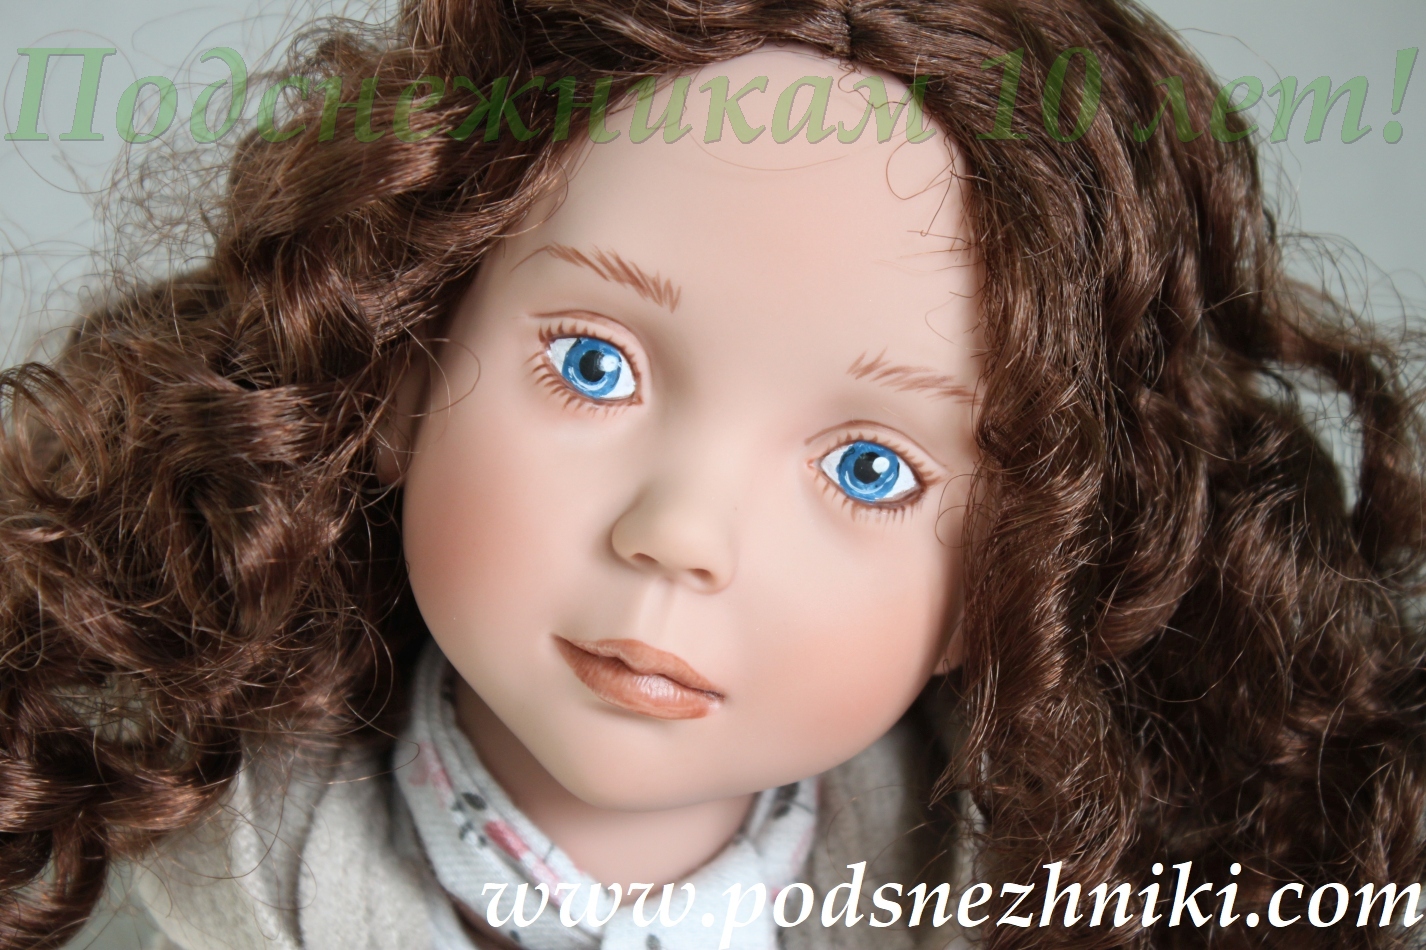 Юбилейная куколка от Zwergnase для Подснежников